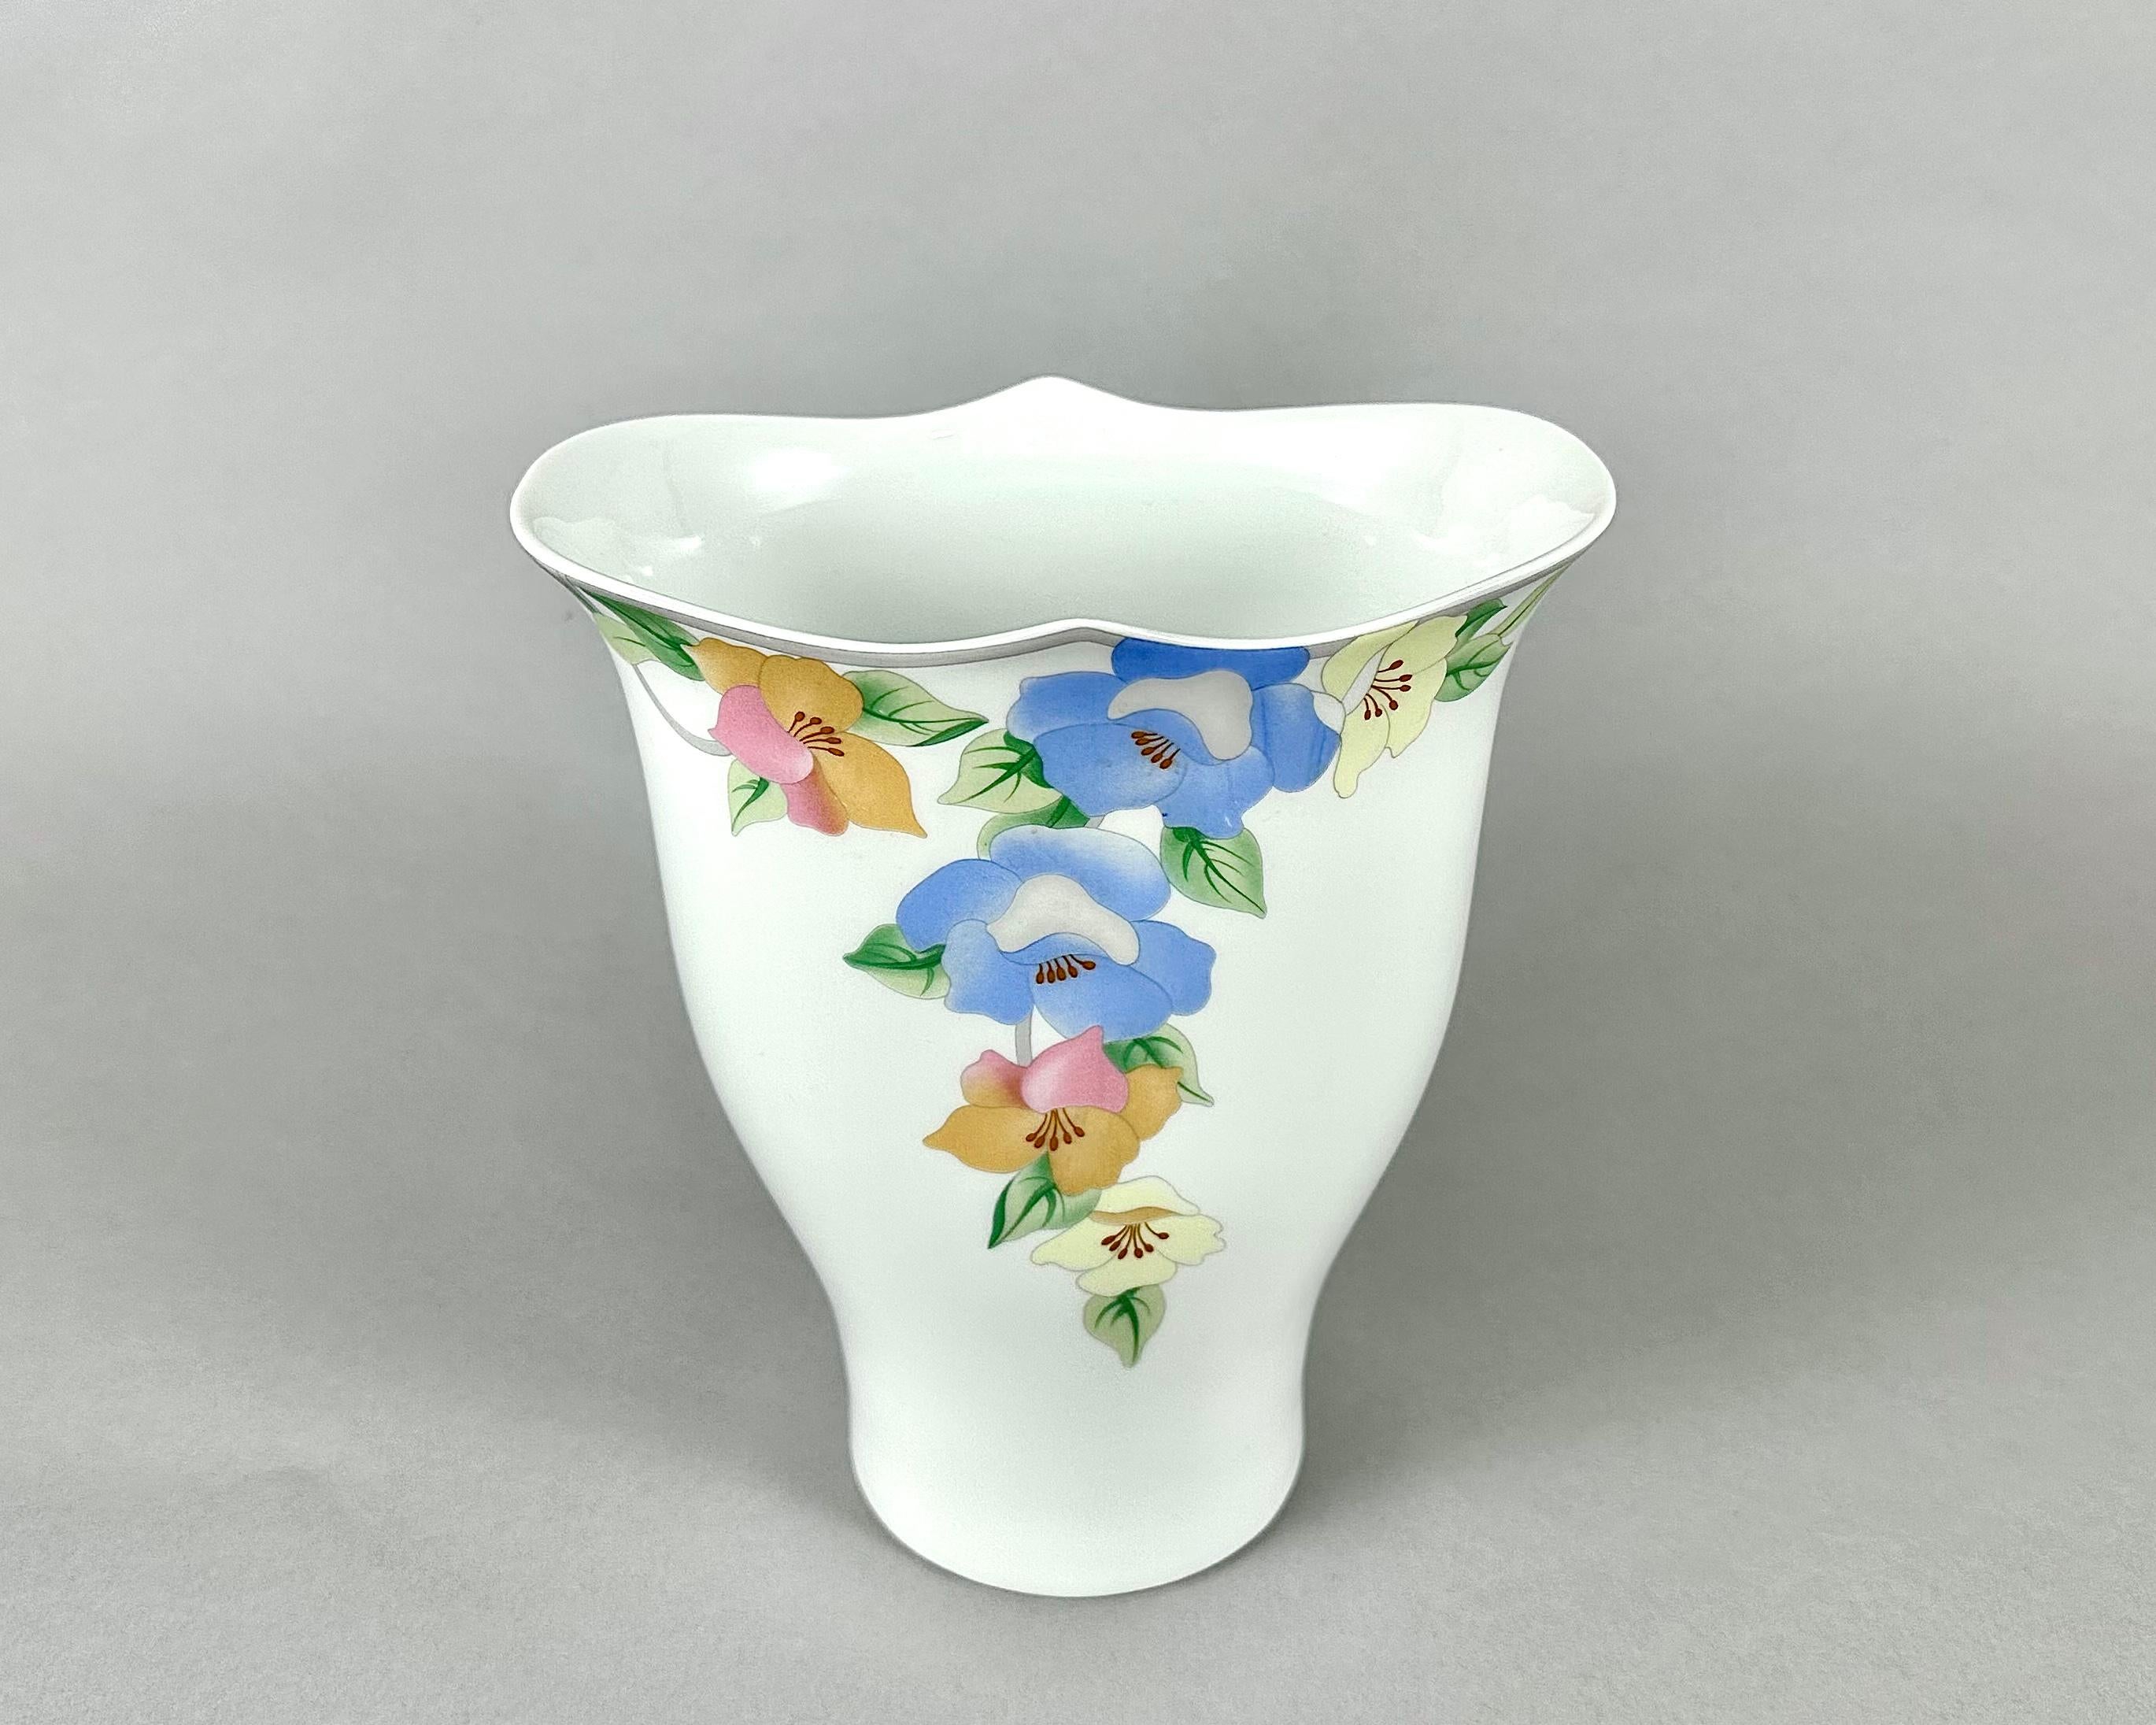 old vase design